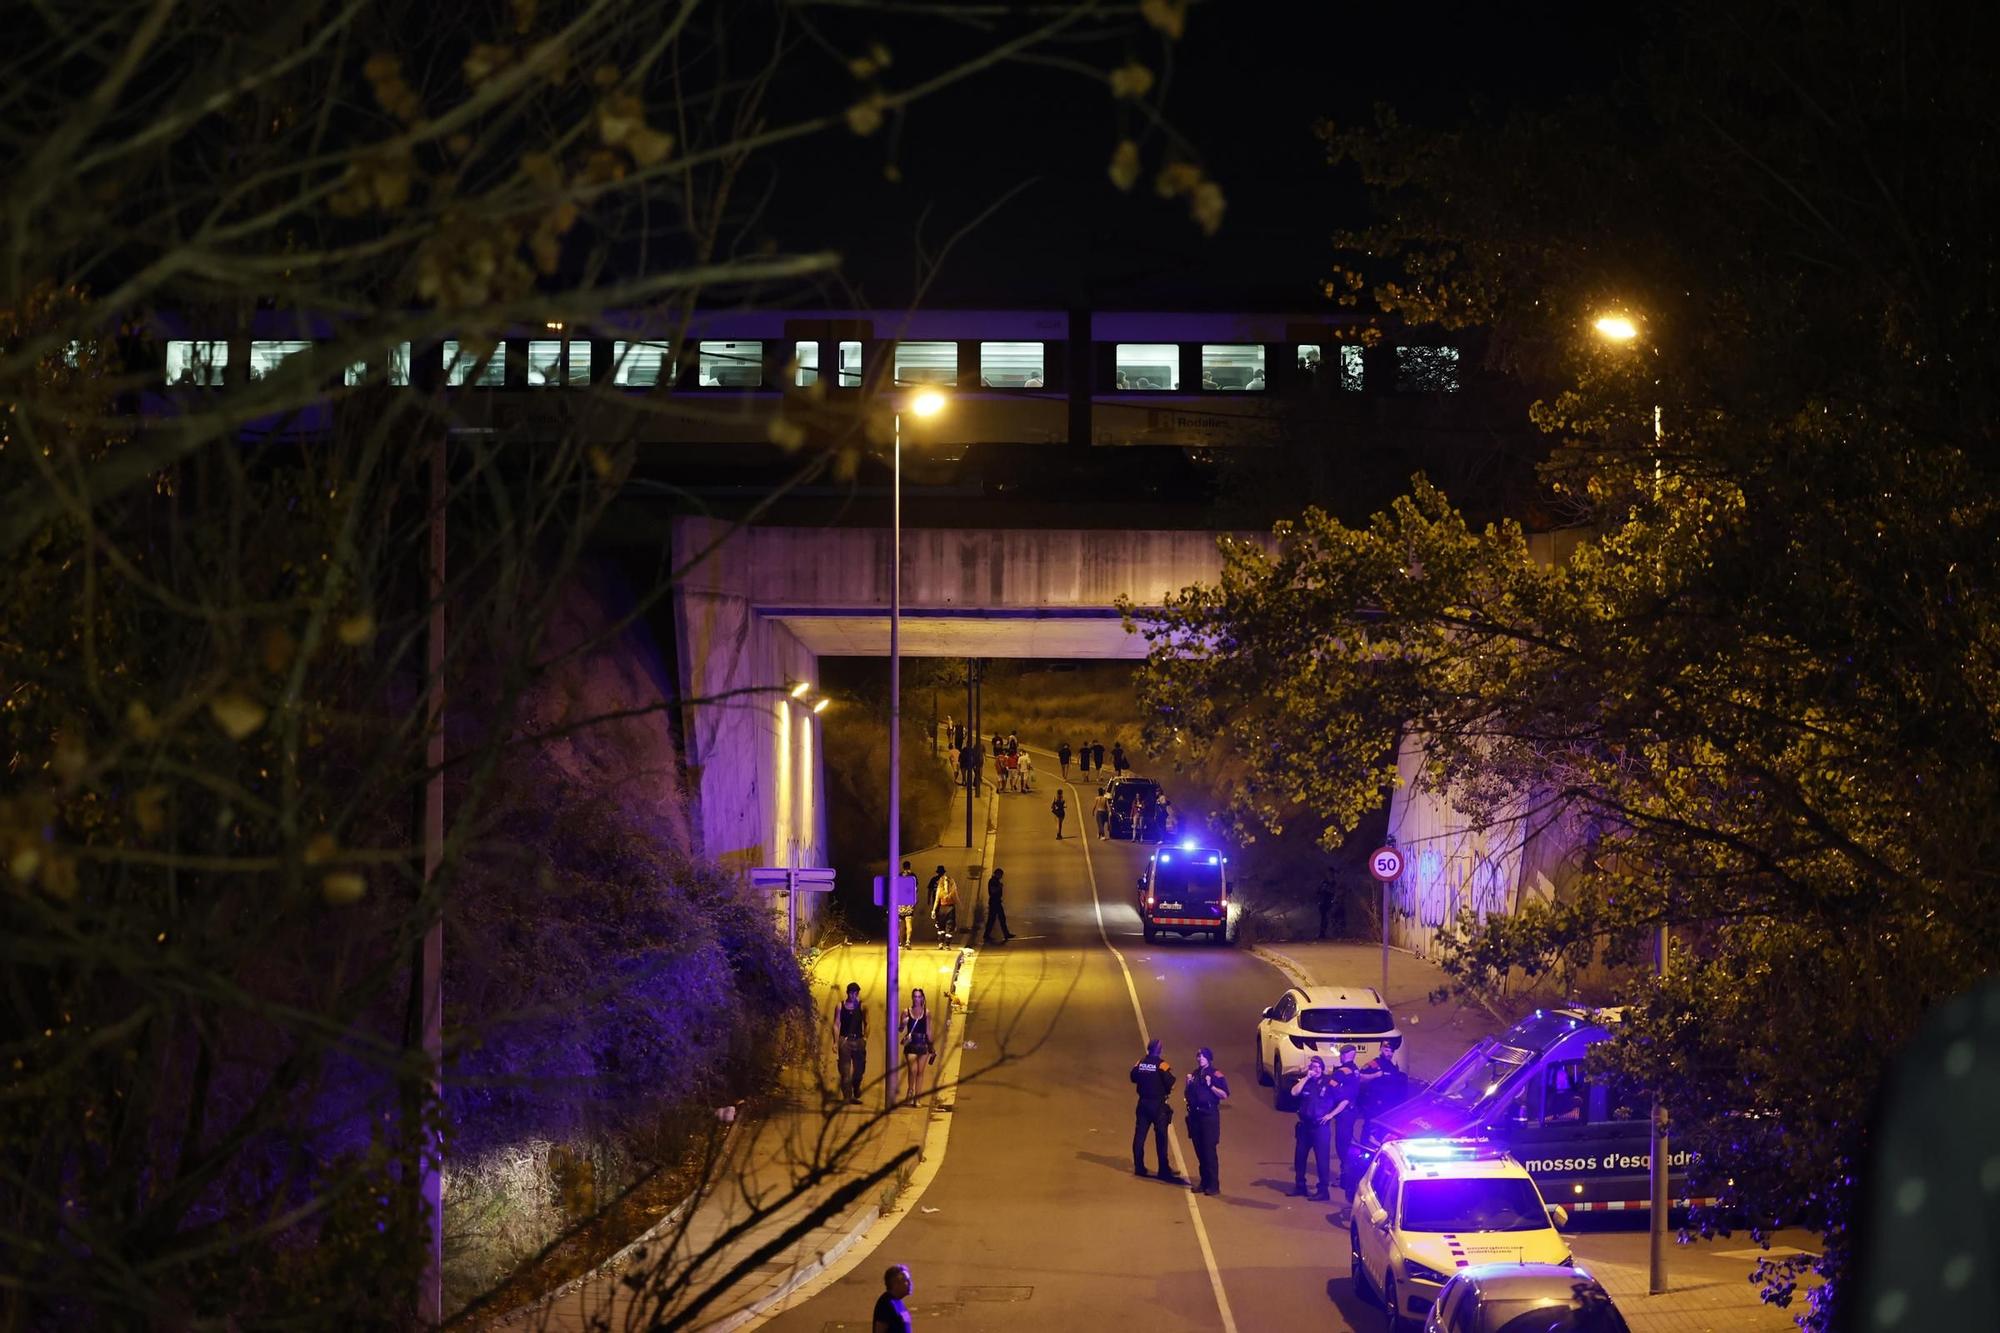 L'atropellament múltiple d'un tren deixa quatre joves morts a Montmeló